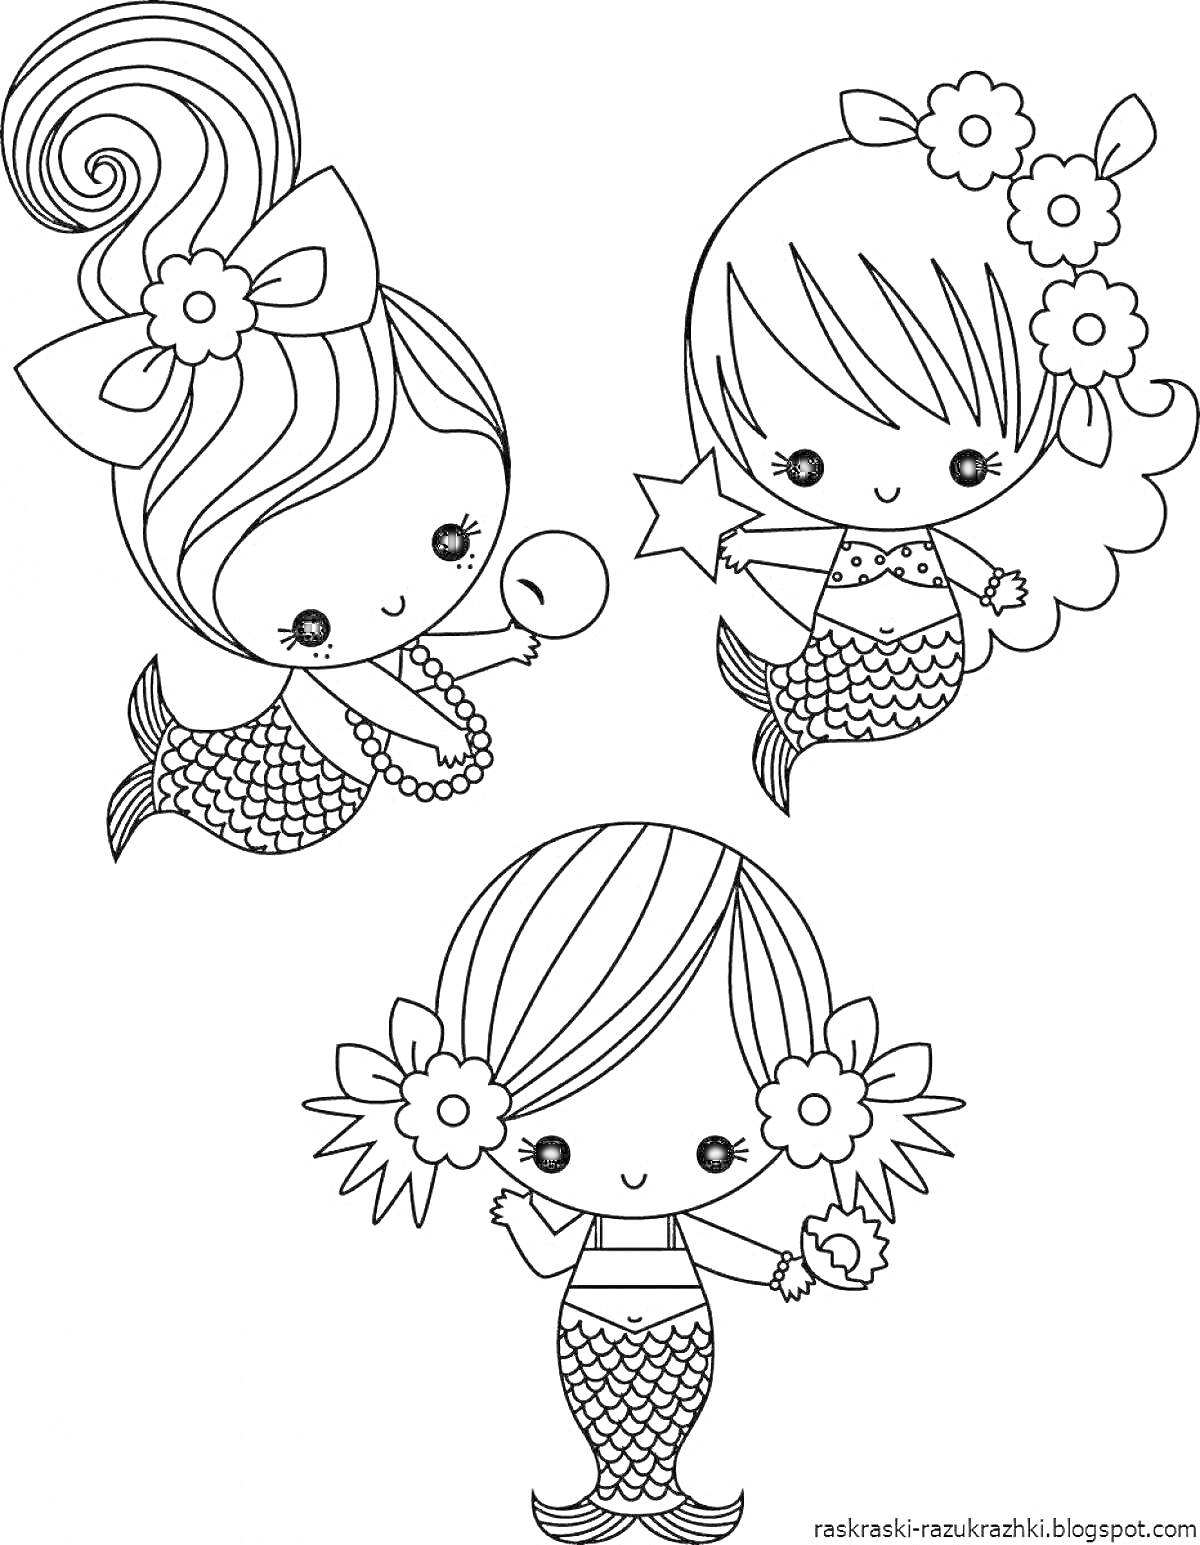 Раскраска Три маленькие русалочки с цветами в волосах, игрушками и хвостами